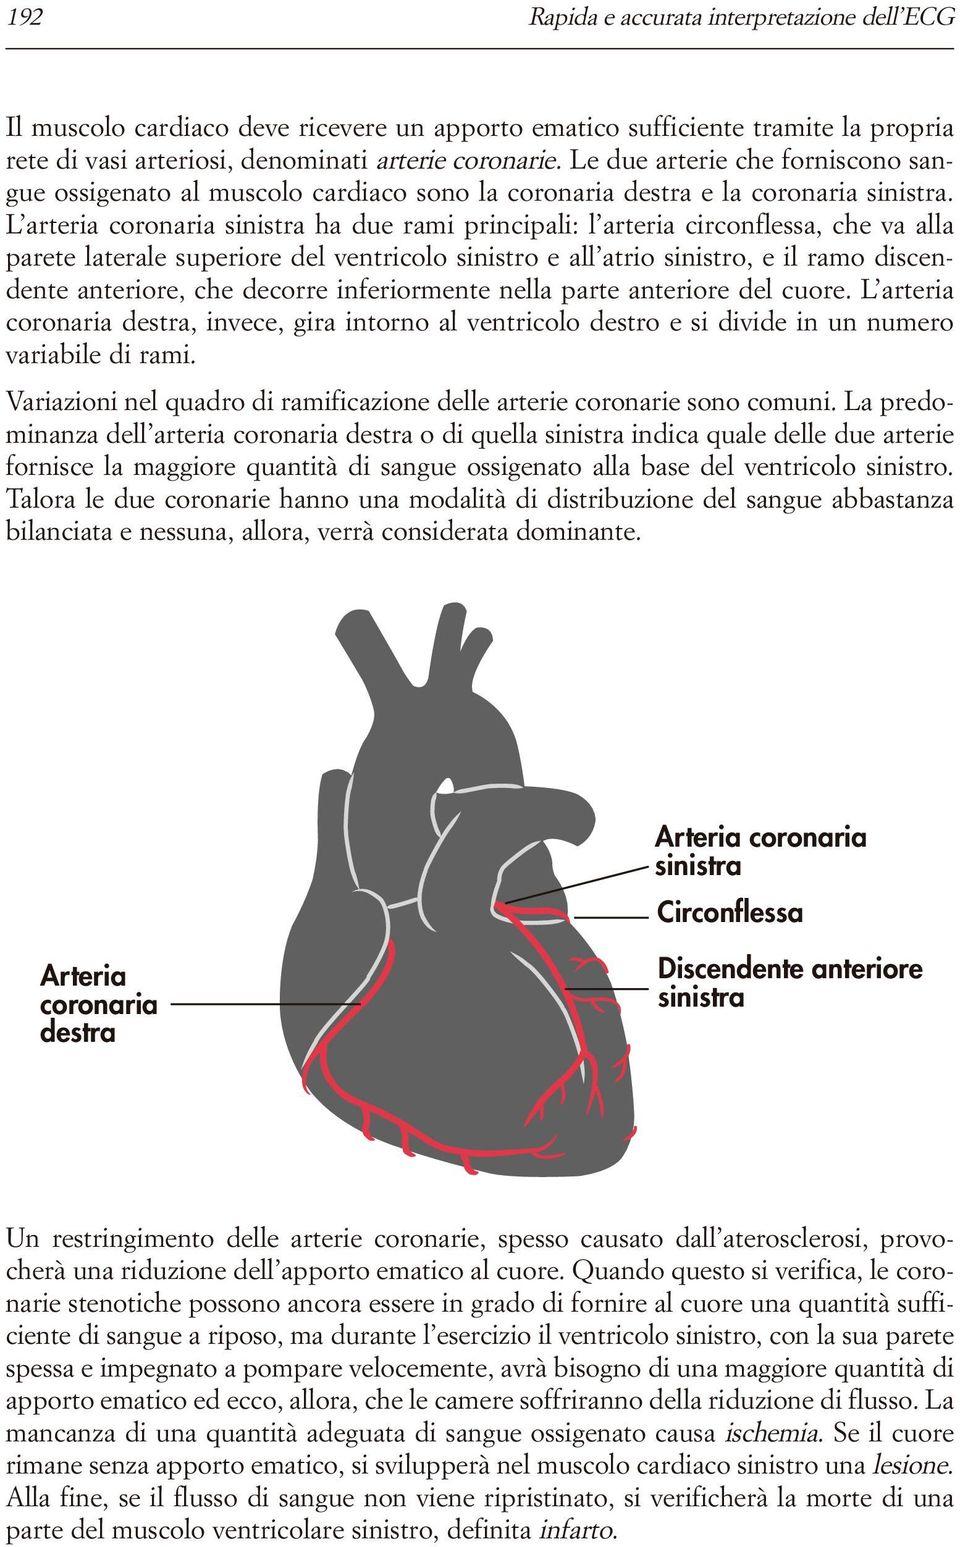 L arteria coronaria sinistra ha due rami principali: l arteria circonflessa, che va alla parete laterale superiore del ventricolo sinistro e all atrio sinistro, e il ramo discendente anteriore, che